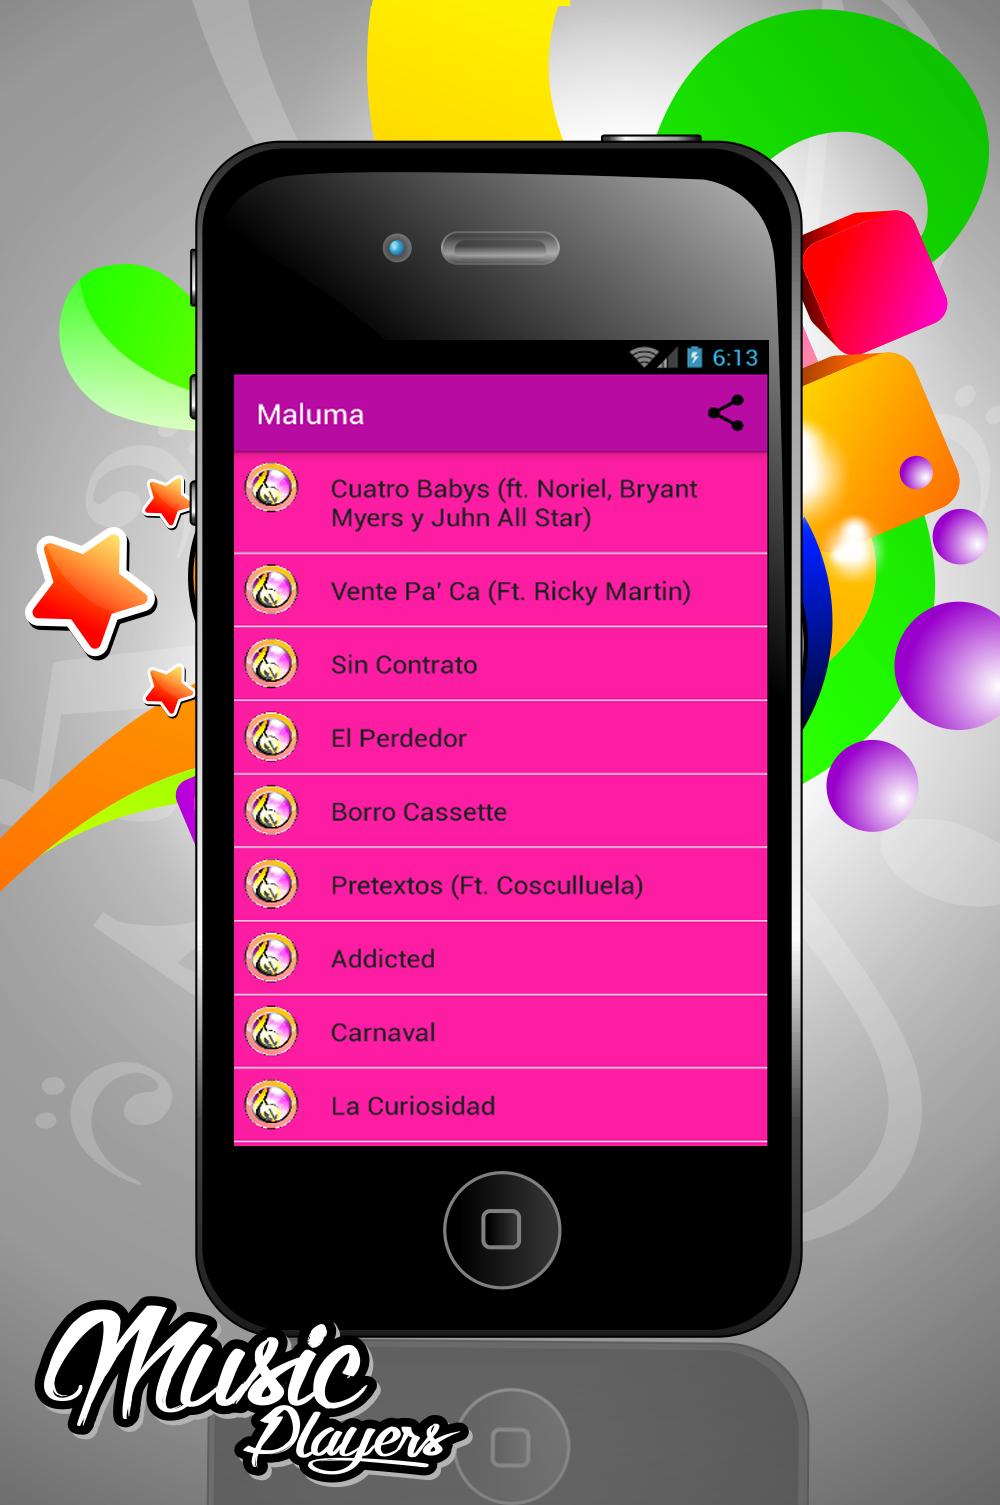 Borro Cassette Maluma APK for Android Download